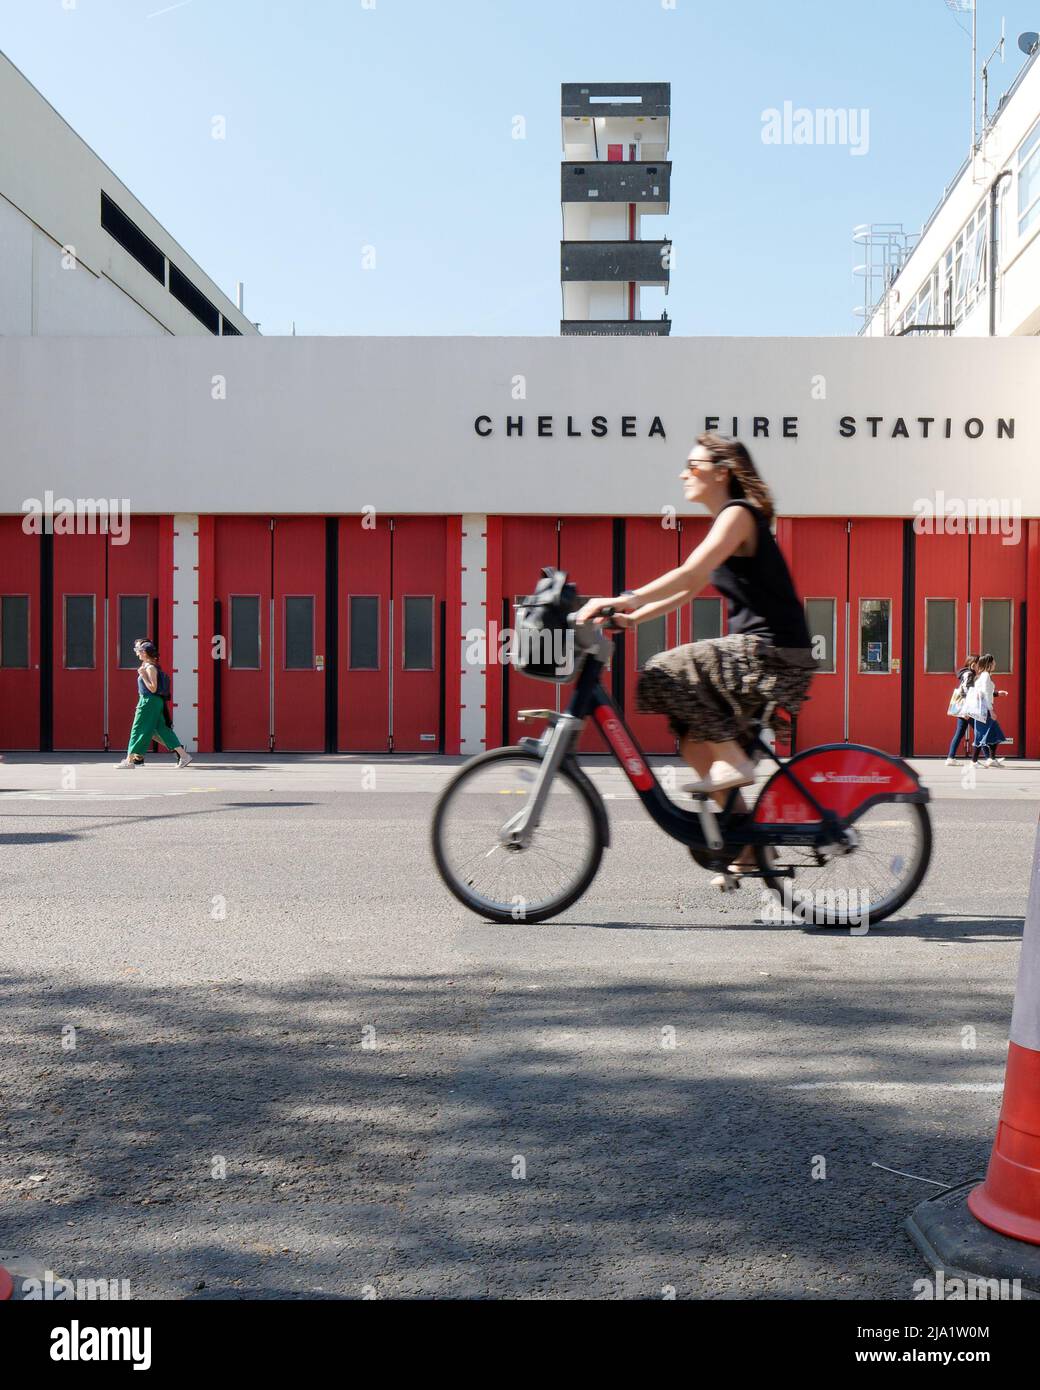 Londres, Grand Londres, Angleterre, 14 mai 2022: Lady on a Santander louer un cycle alias Borris Bike tours passé Chelsea Fire Station sur la Kings Road. Banque D'Images